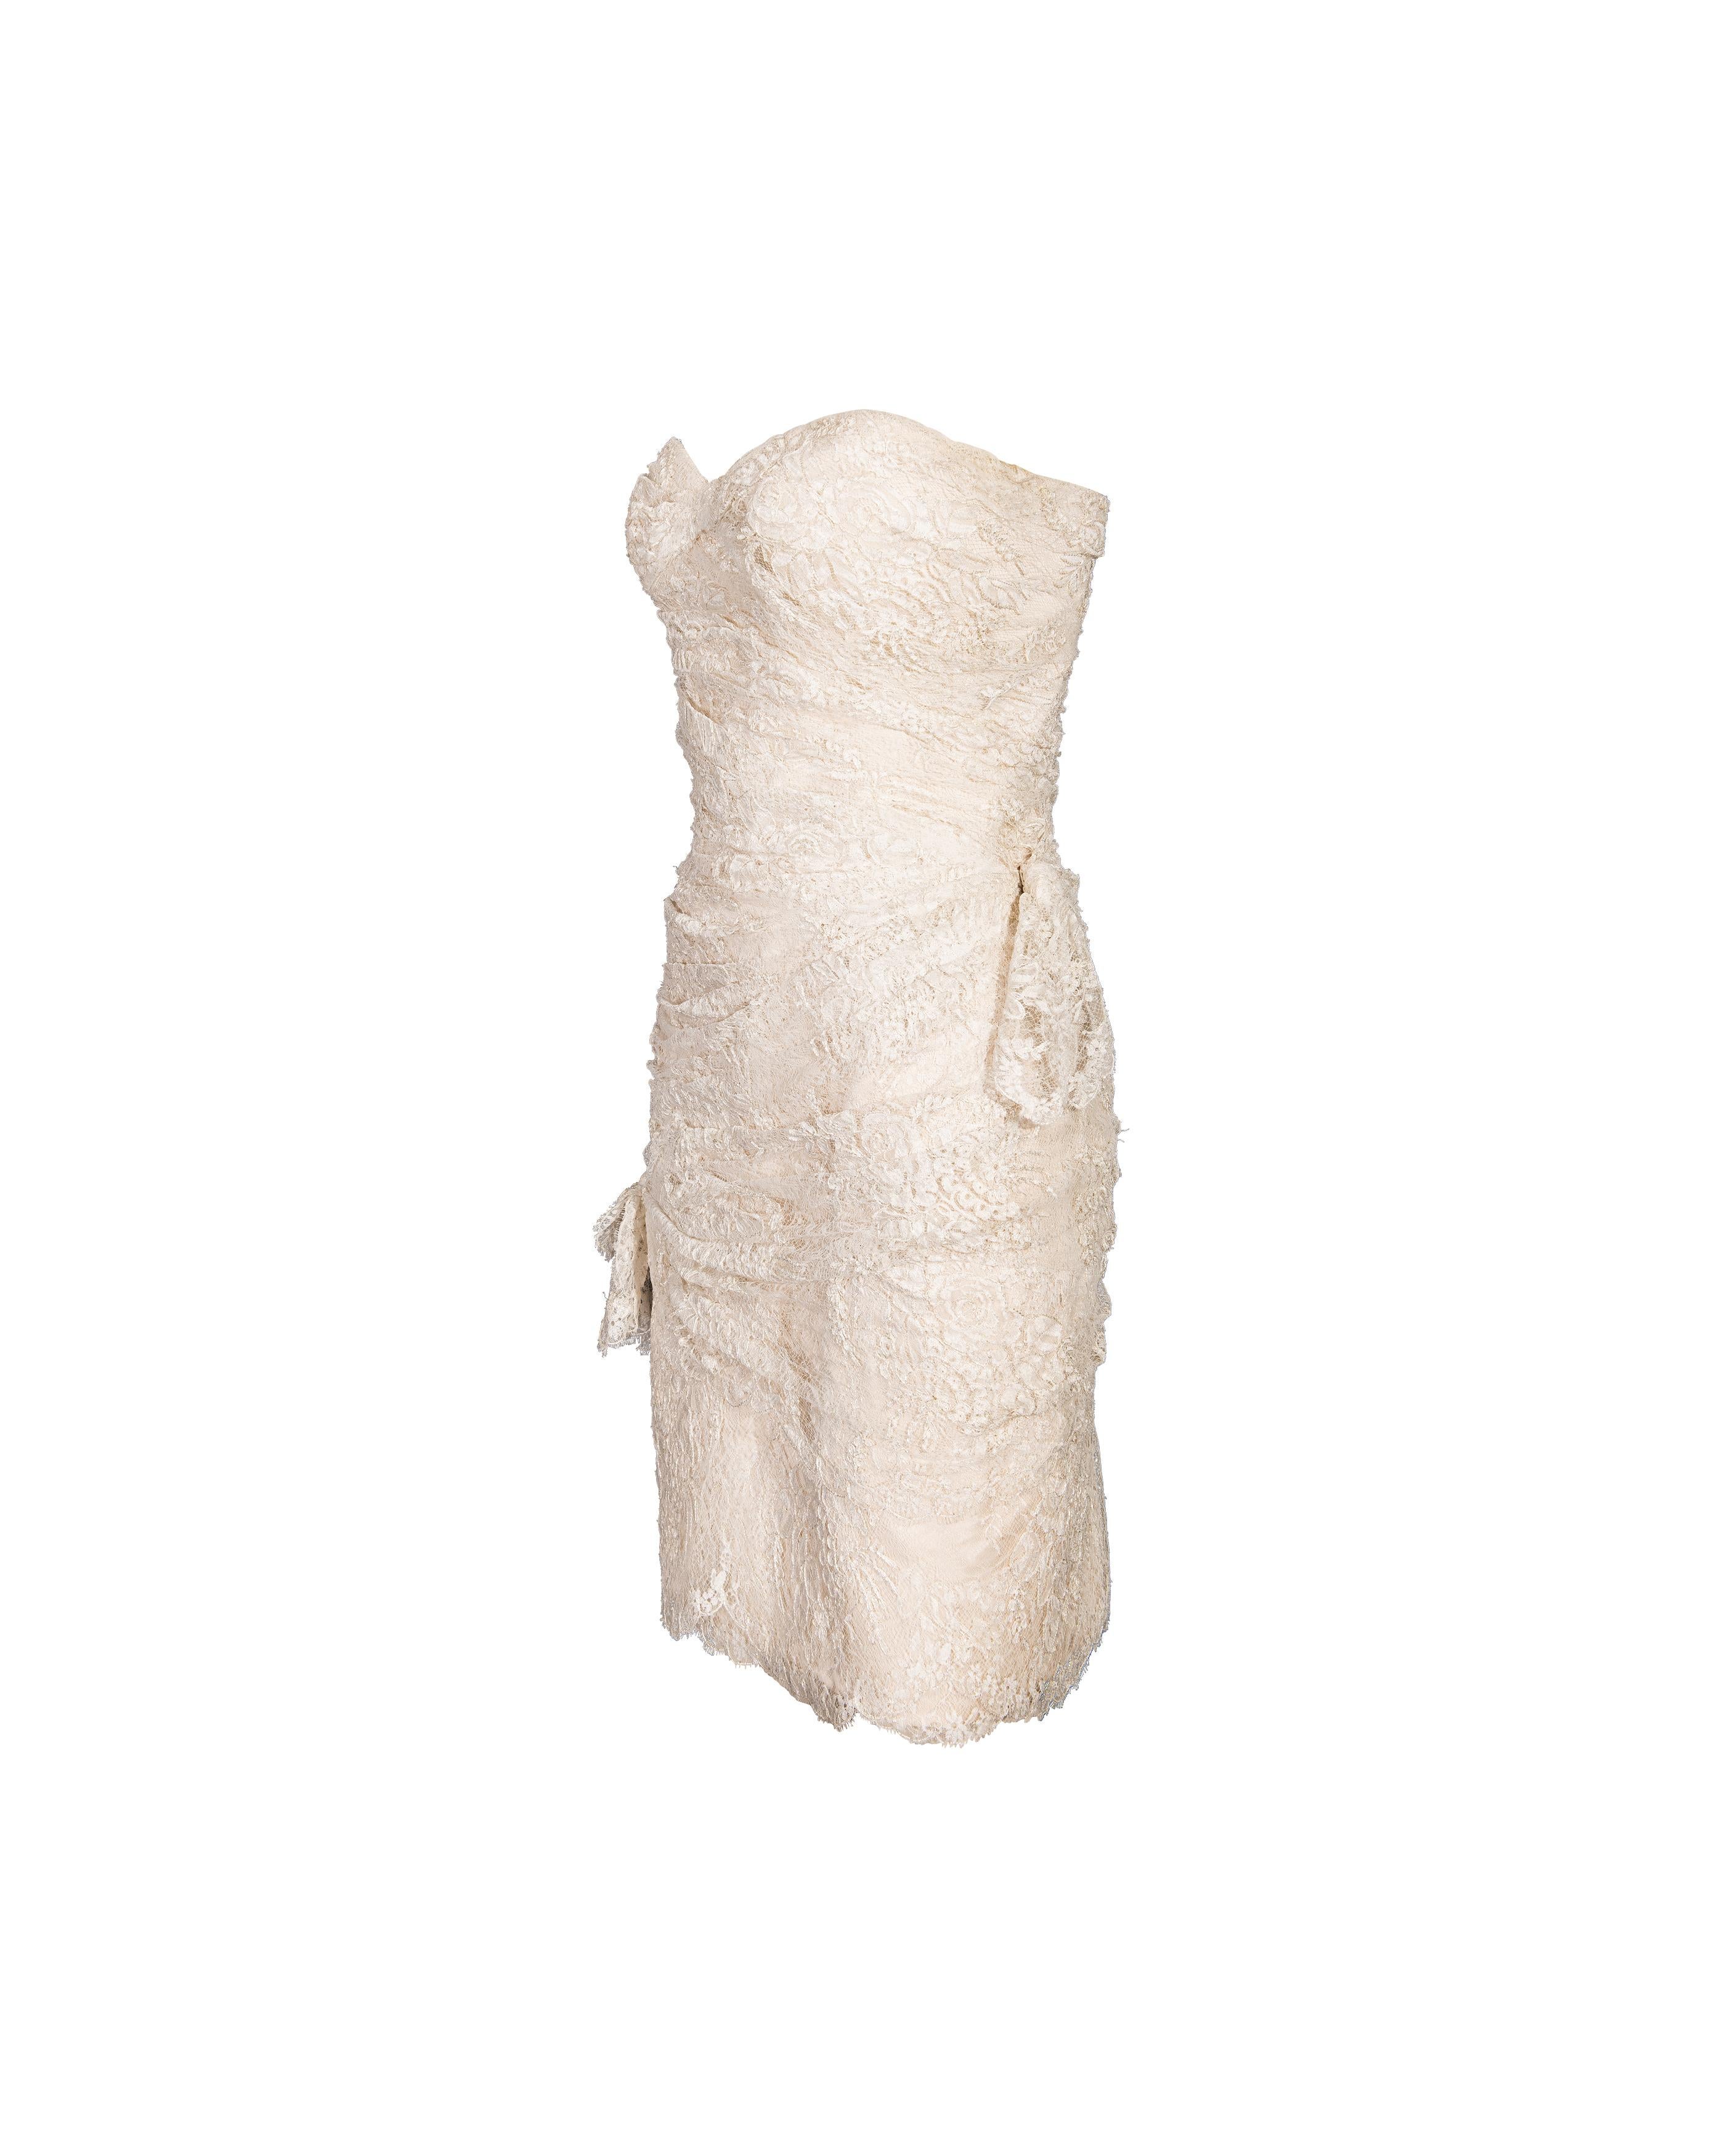 Mini robe fourreau en dentelle sans bretelles Emanuel Ungaro, 1970. Mini robe bustier ajustée avec dentelle froncée et drapée sur toute la longueur et doublure nude. Petit nœud. Fermeture à glissière dissimulée au dos. Cette pièce a été nettoyée par